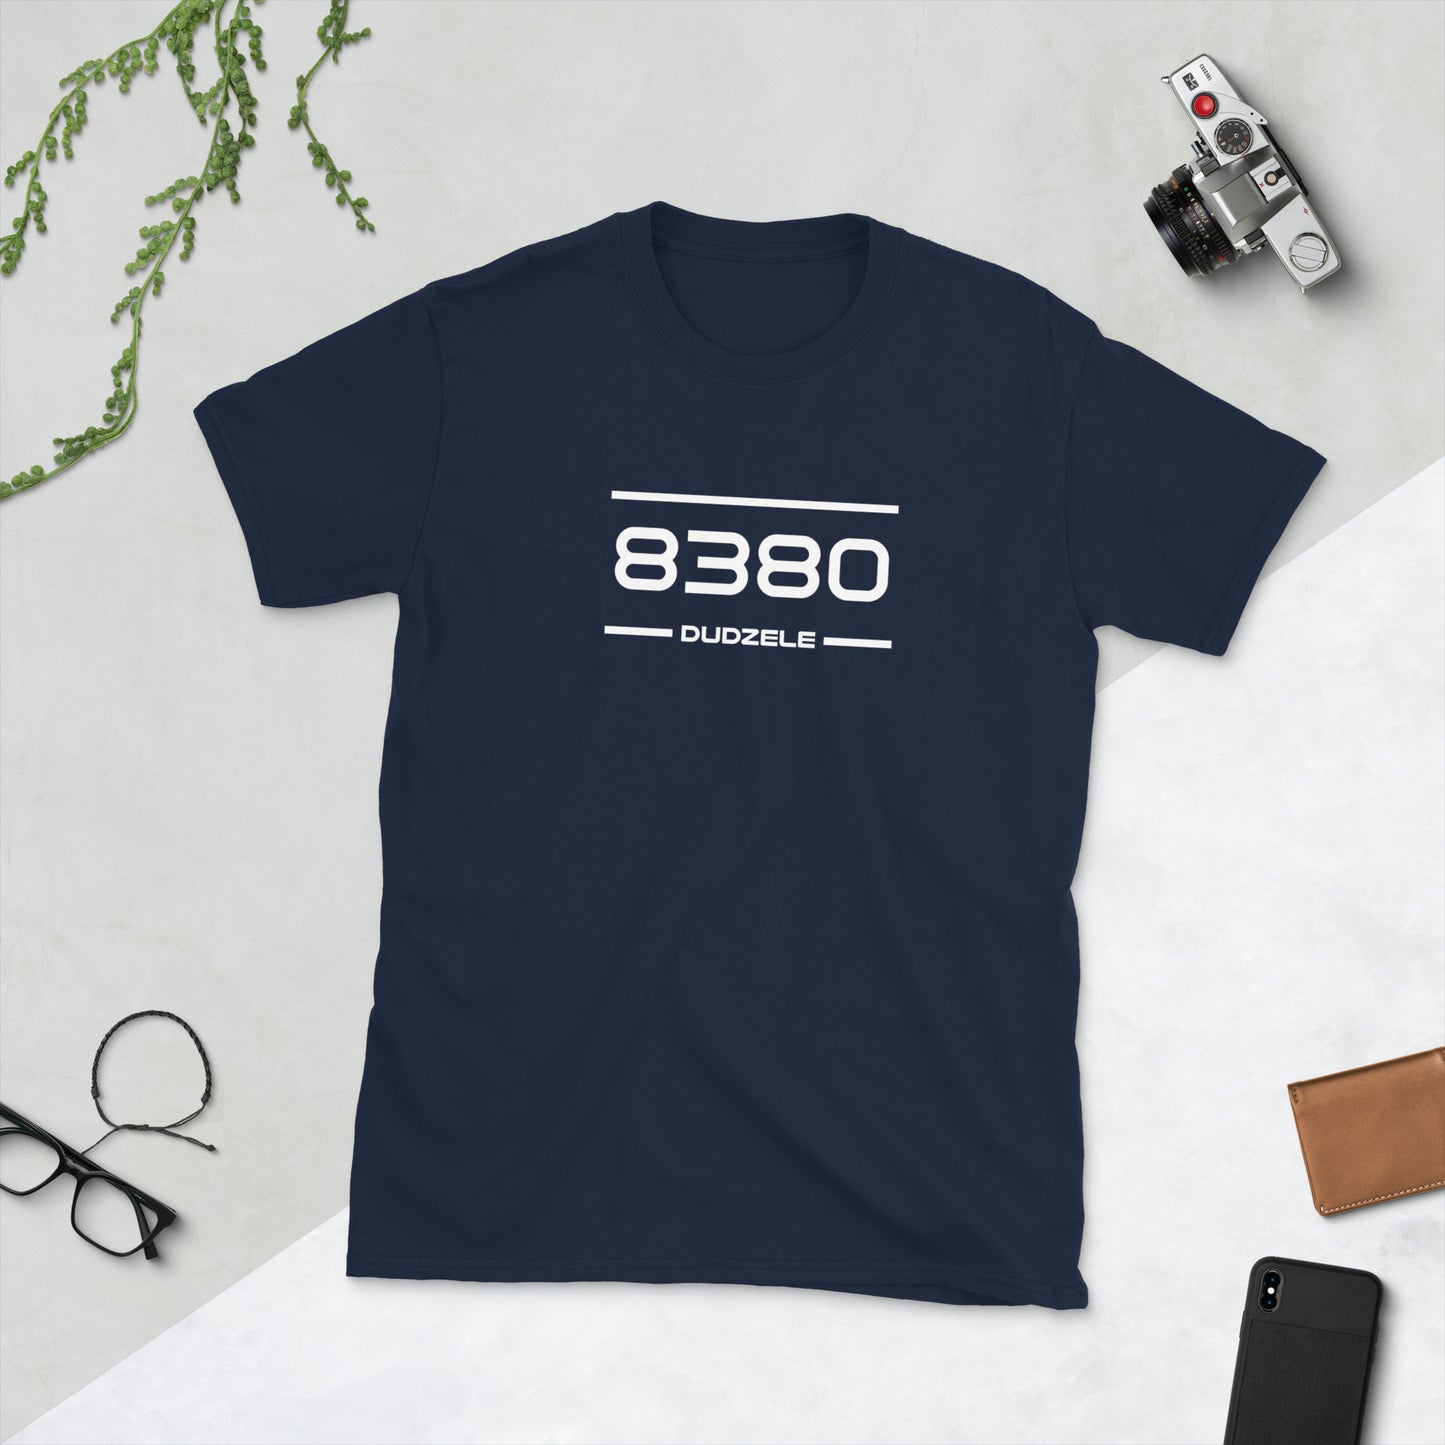 Tshirt - 8380 - Dudzele